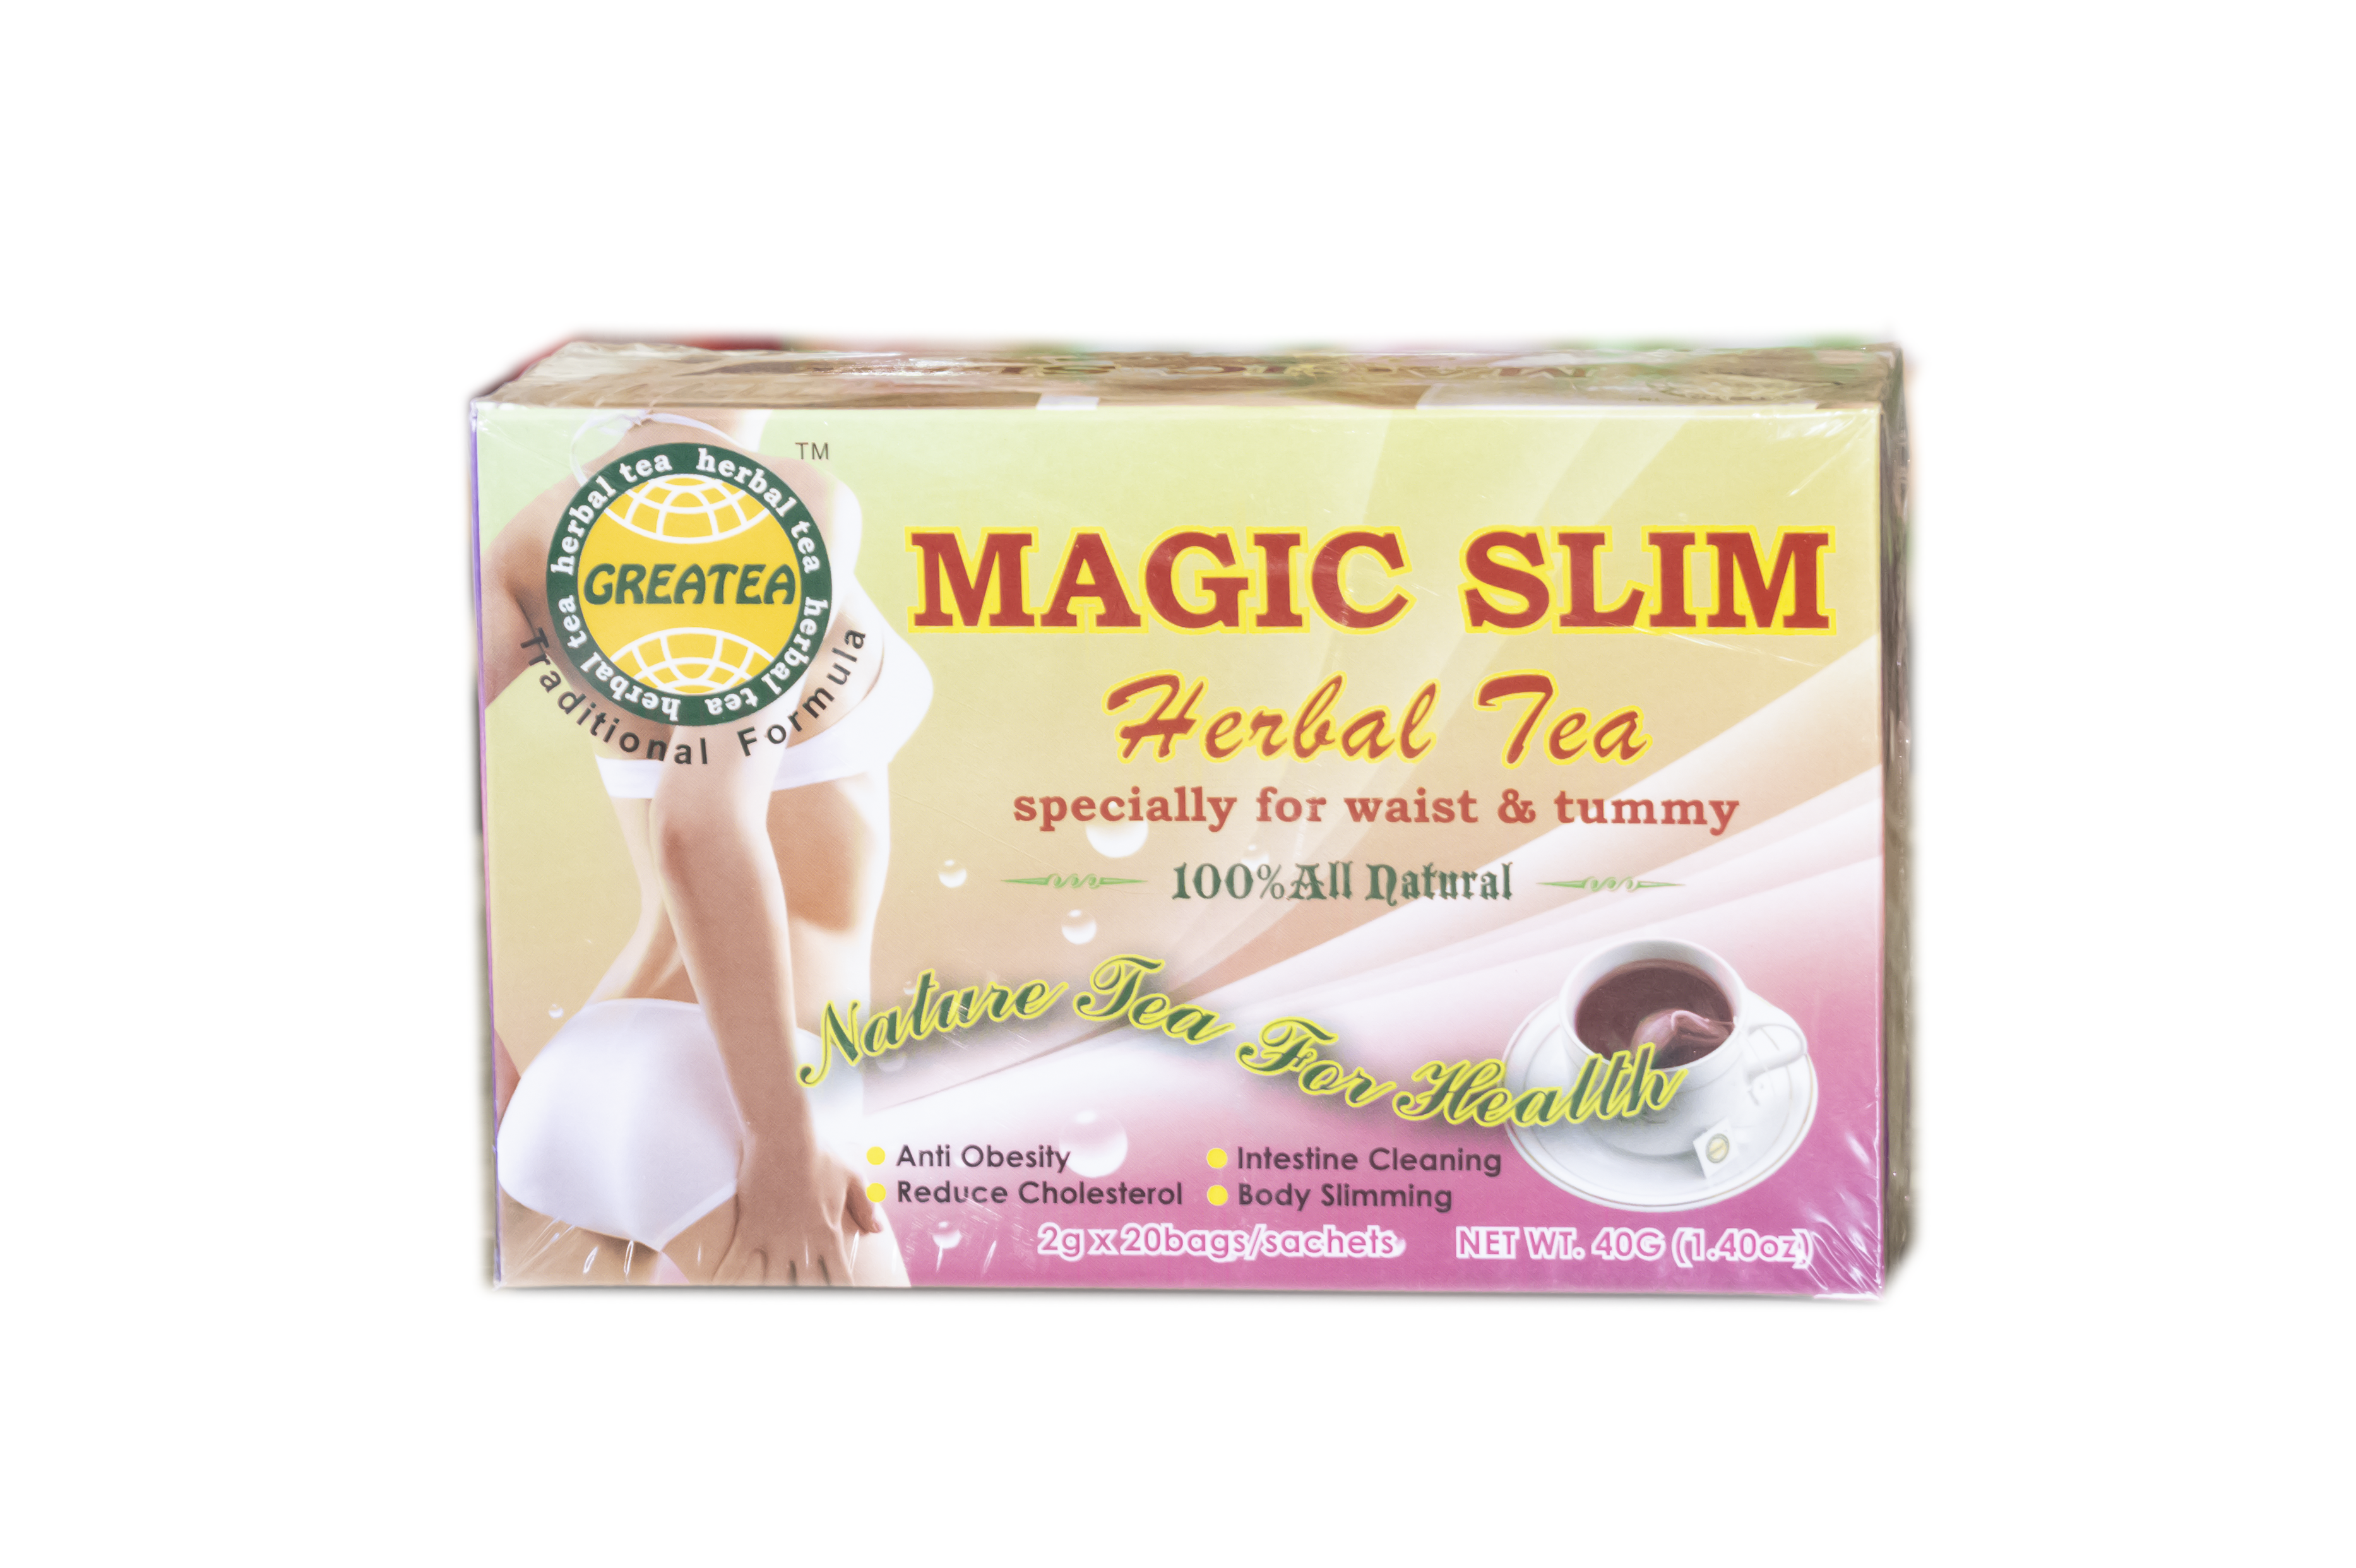 Greatea Magic Slim Herbal Tea 